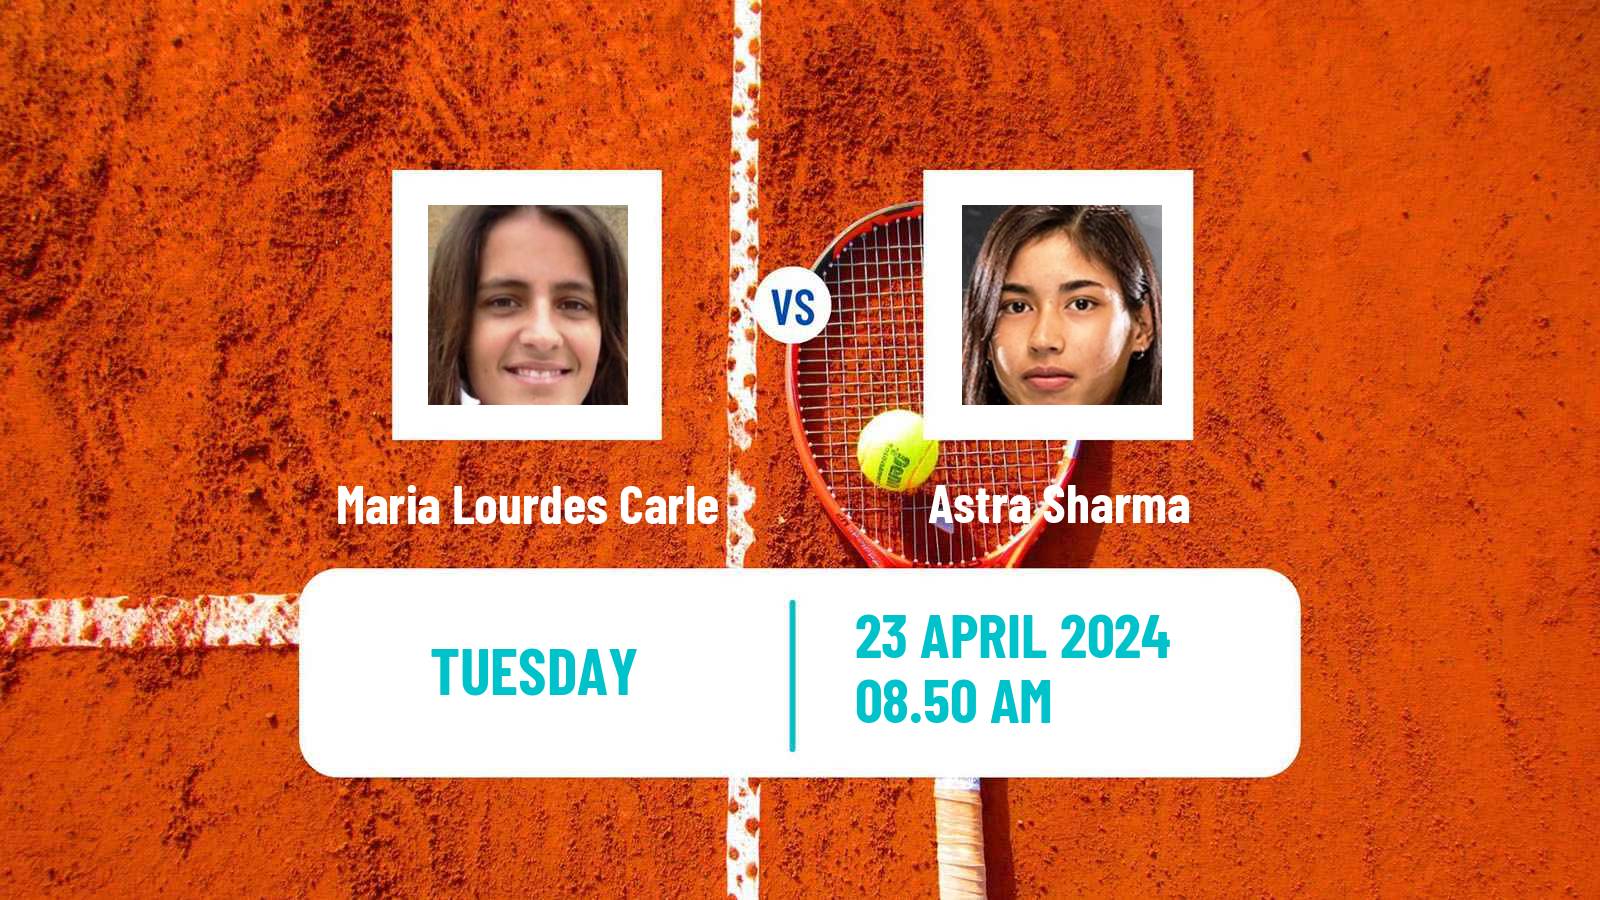 Tennis WTA Madrid Maria Lourdes Carle - Astra Sharma